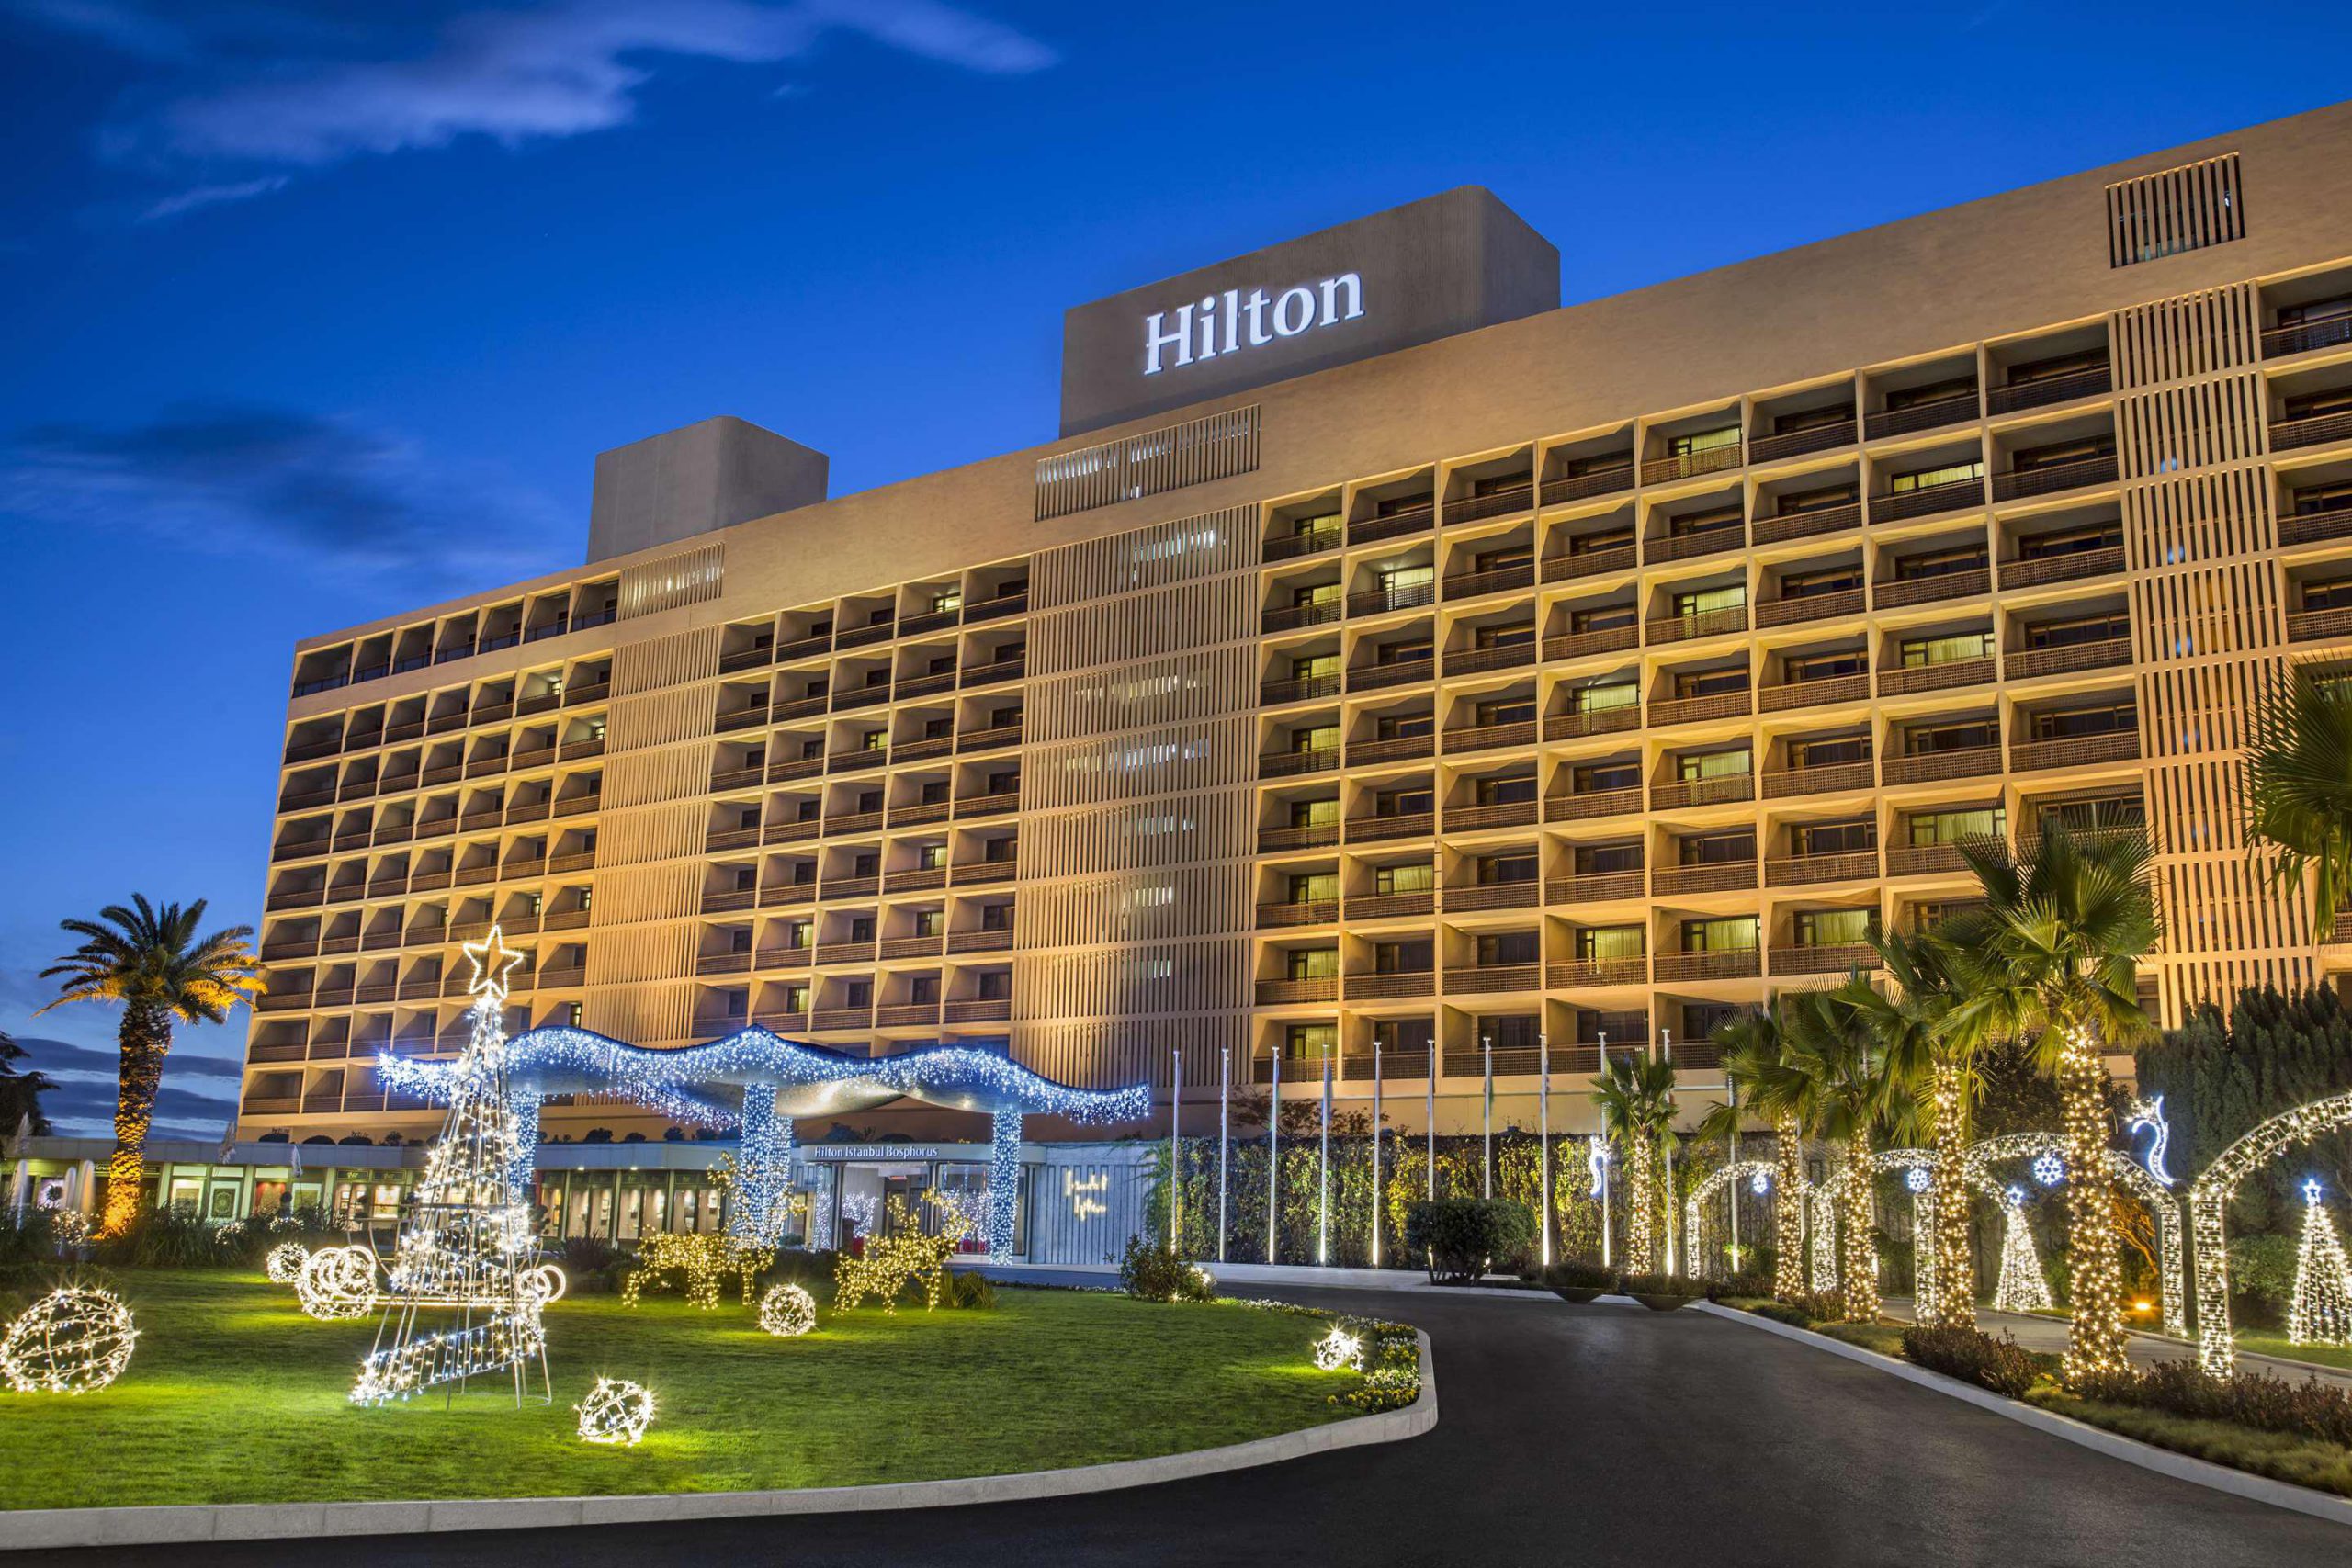 Hilton Hotel Bosphorus Istanbul - 5star Hotel - Shivar Travel